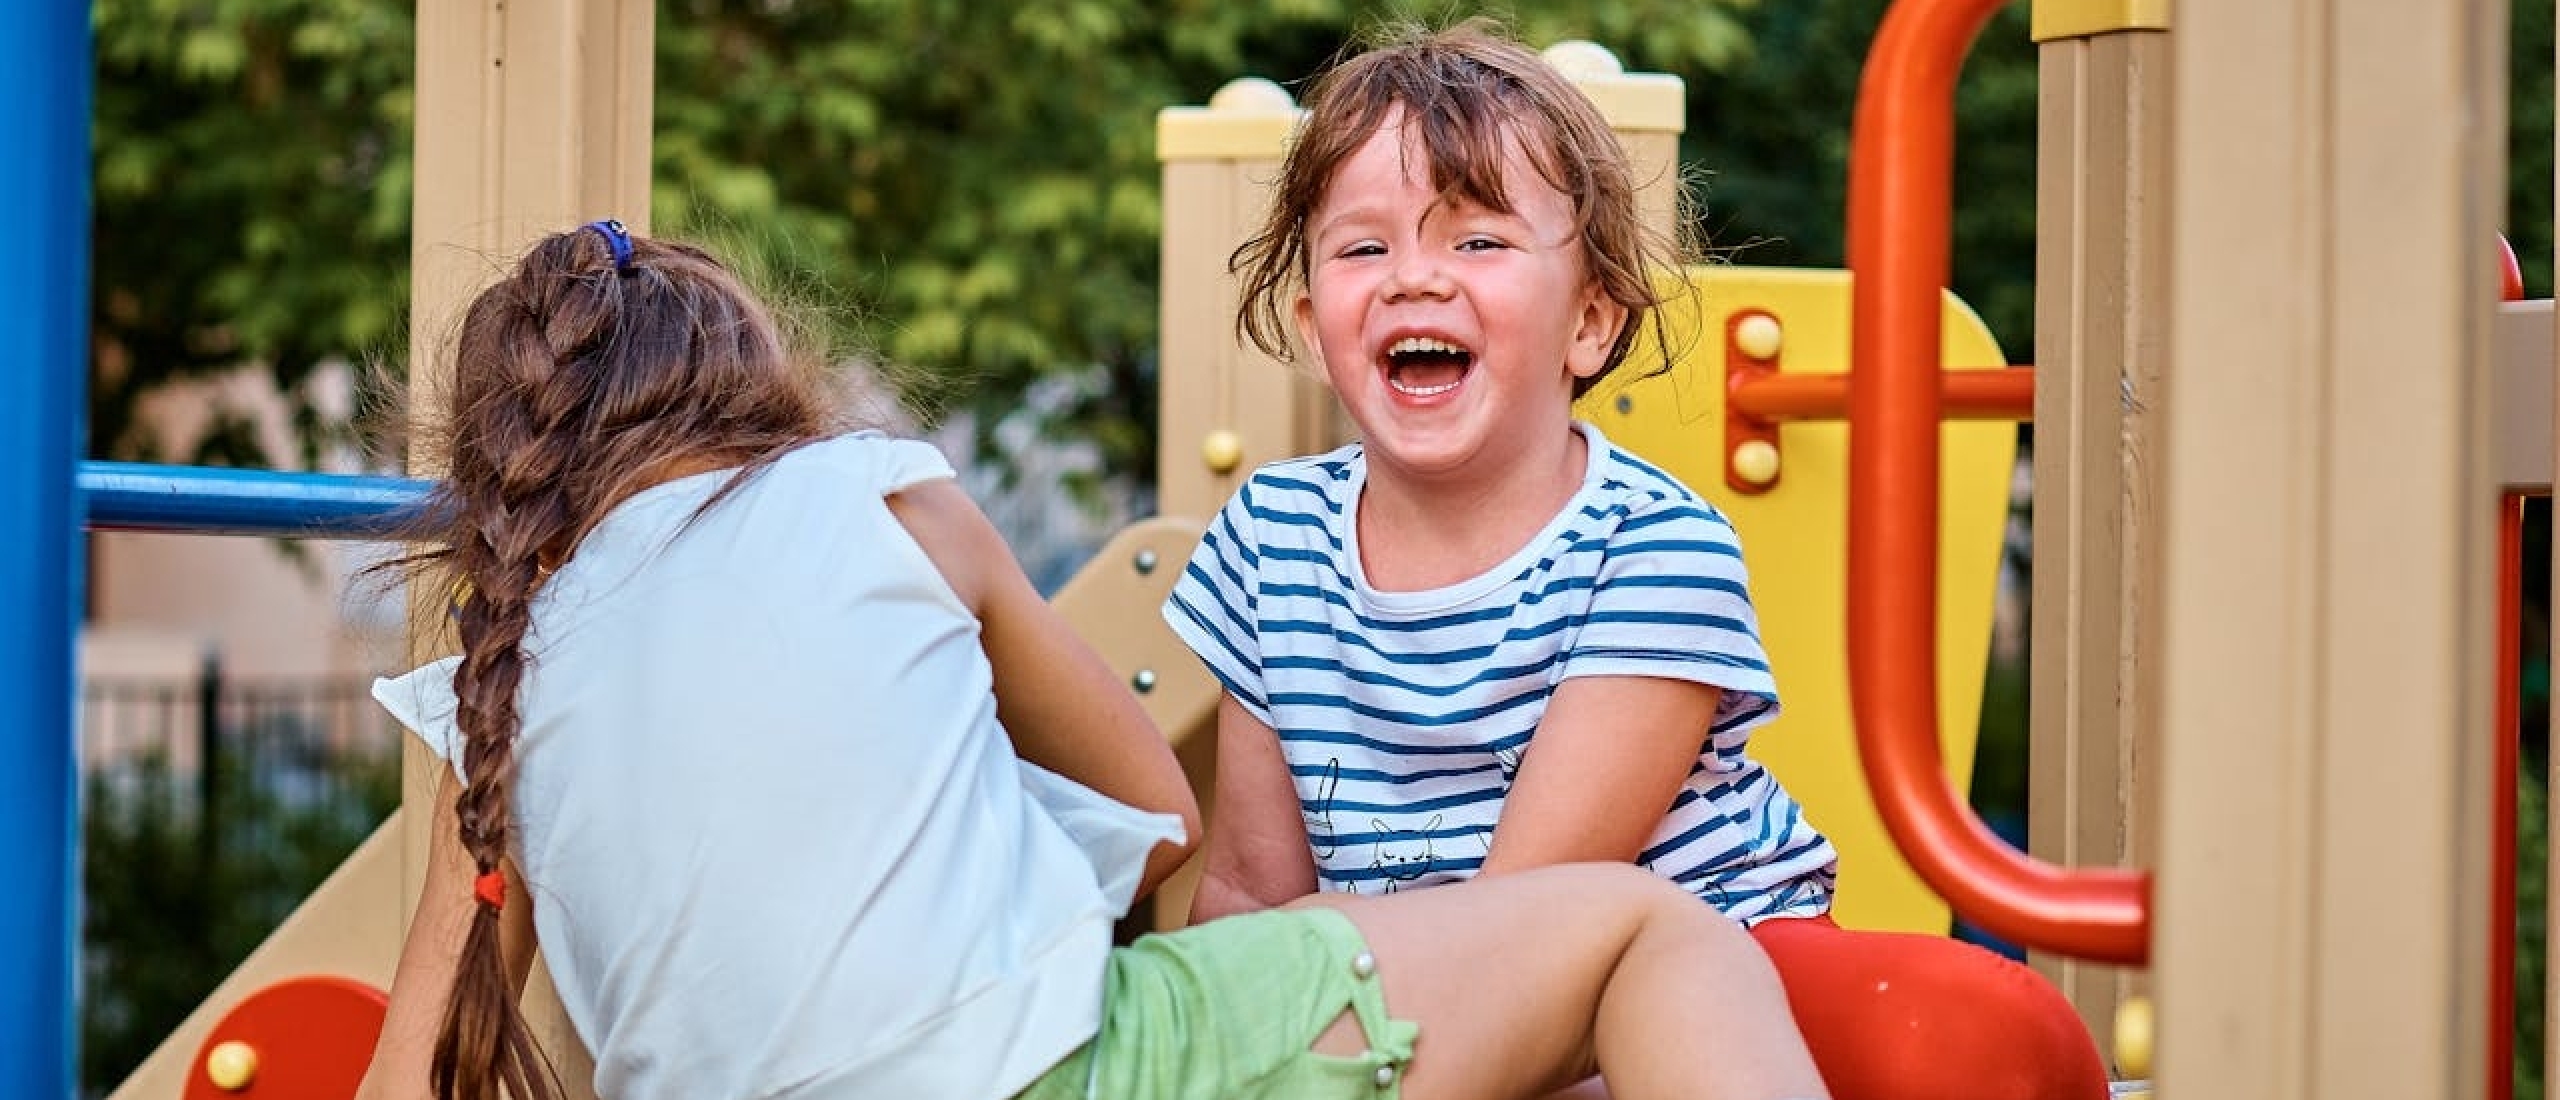 Spellen om buiten te spelen met kinderen, alleen of samen - Gezondheid.nl